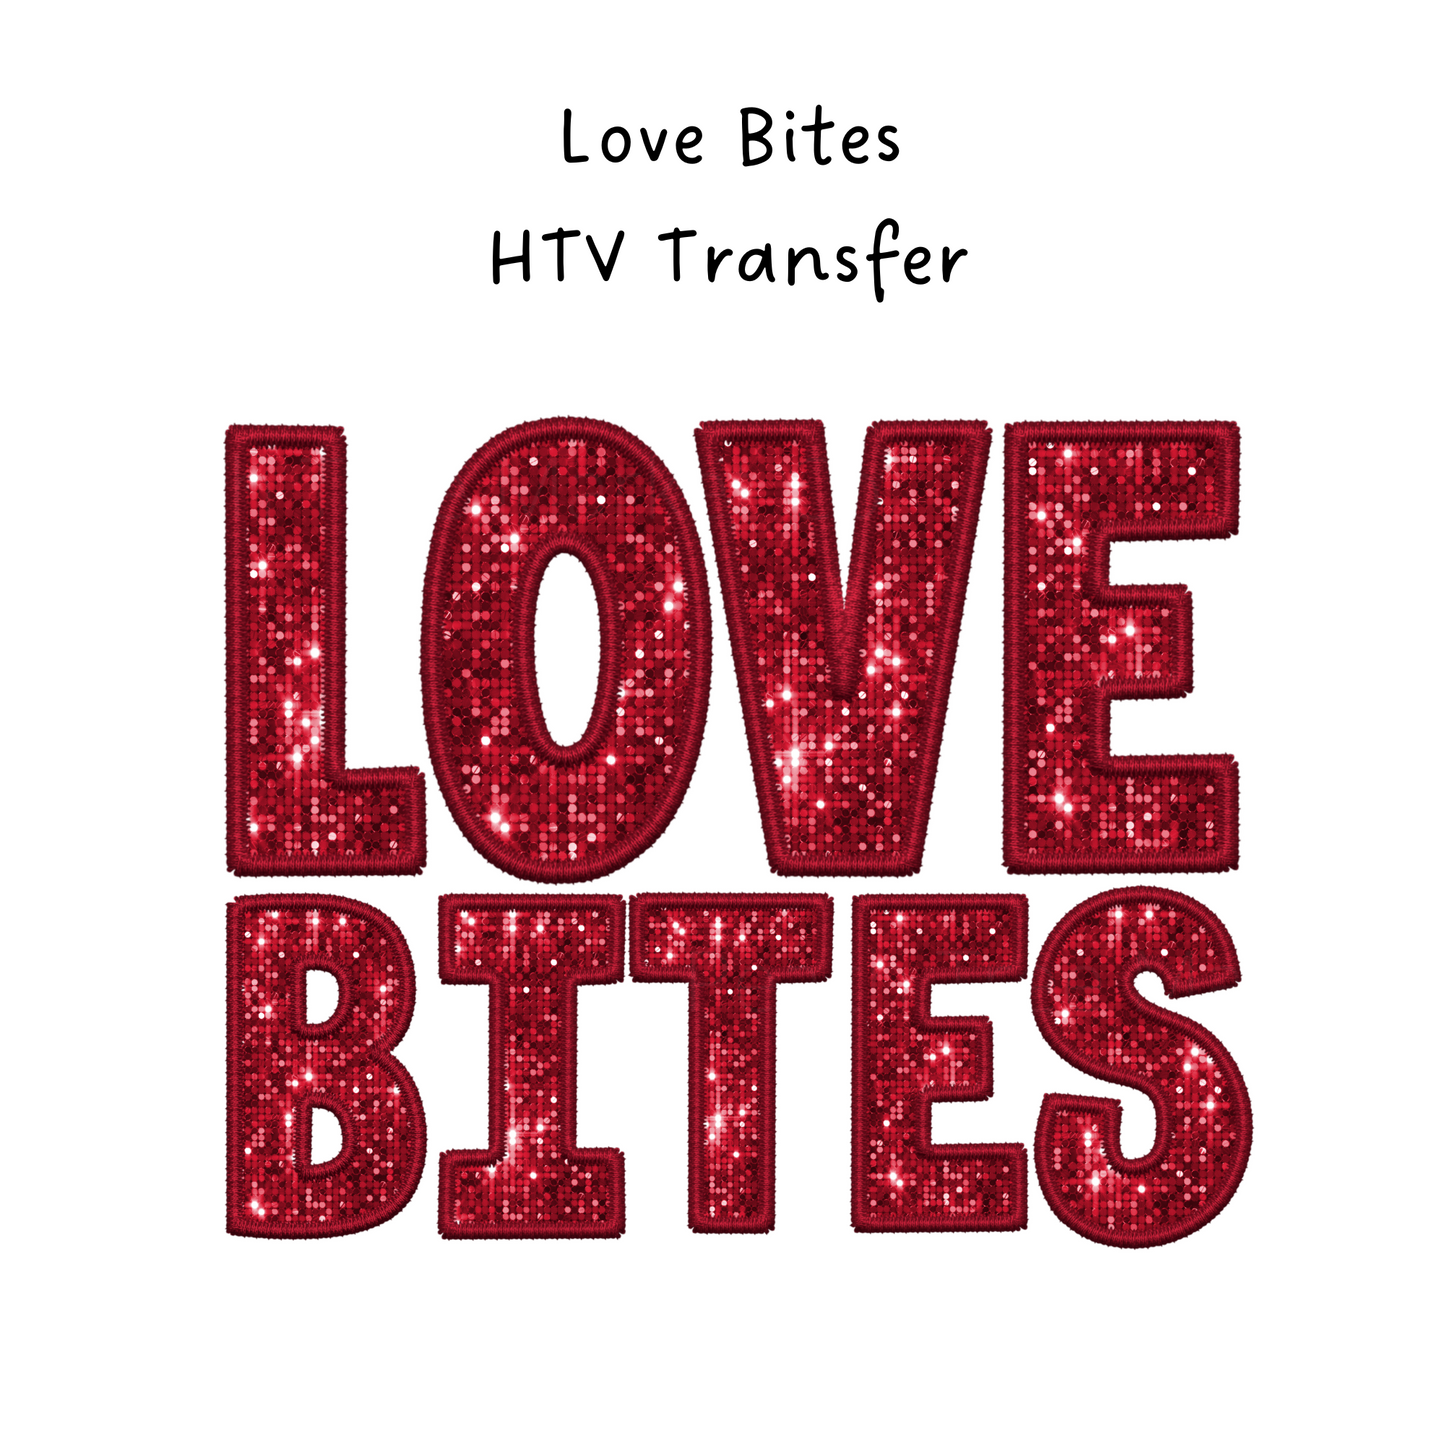 Love Bites HTV Transfer